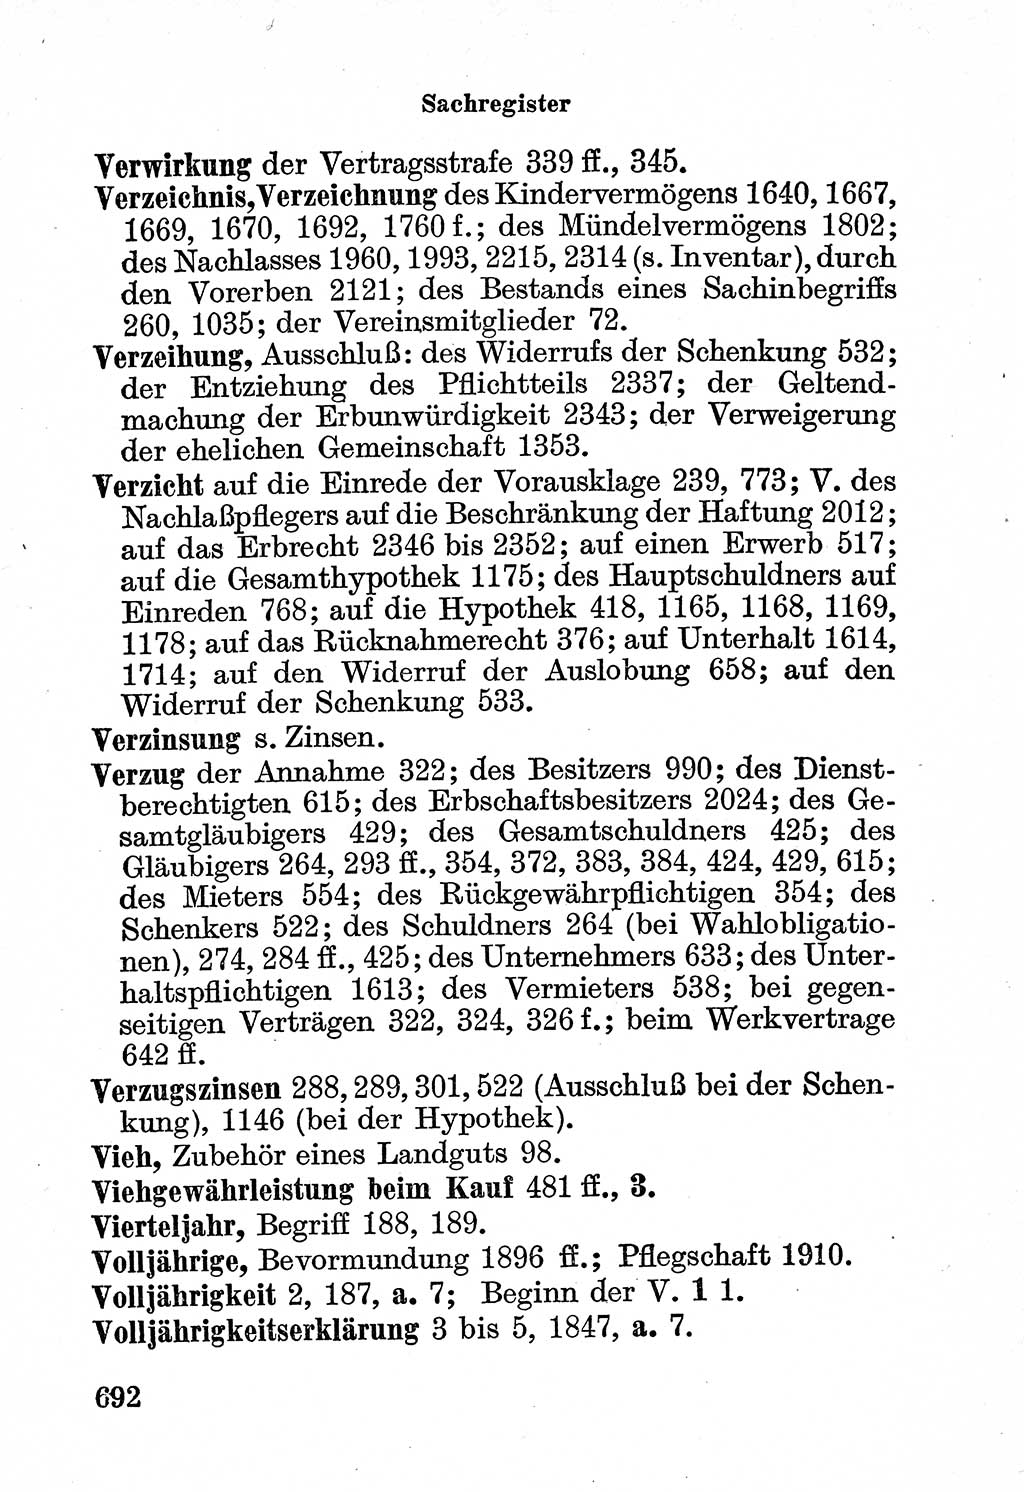 Bürgerliches Gesetzbuch (BGB) nebst wichtigen Nebengesetzen [Deutsche Demokratische Republik (DDR)] 1956, Seite 692 (BGB Nebenges. DDR 1956, S. 692)